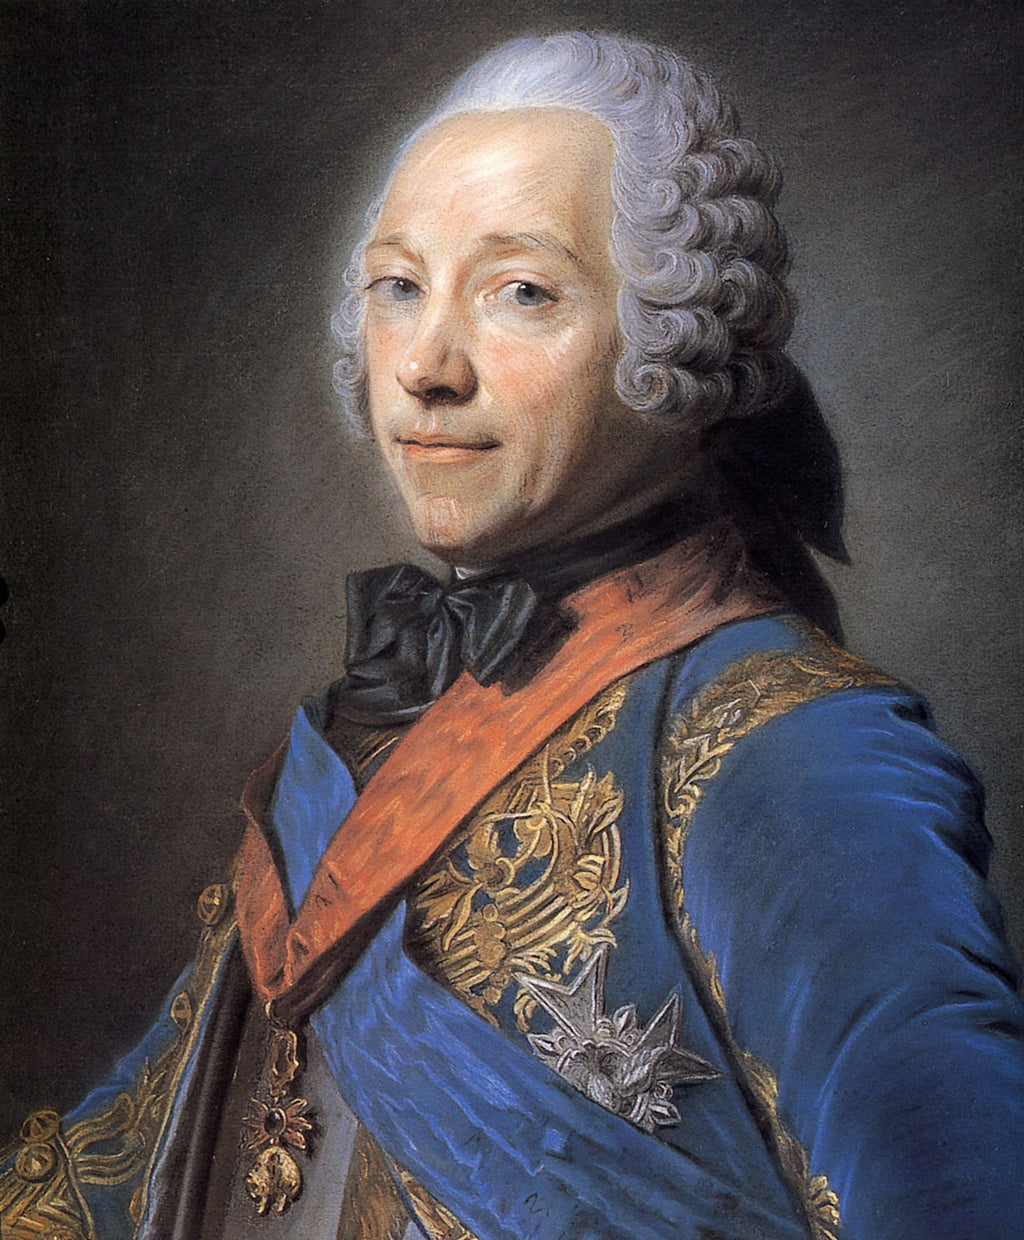 Charles Louis Fouquet, duc de Belle Isle